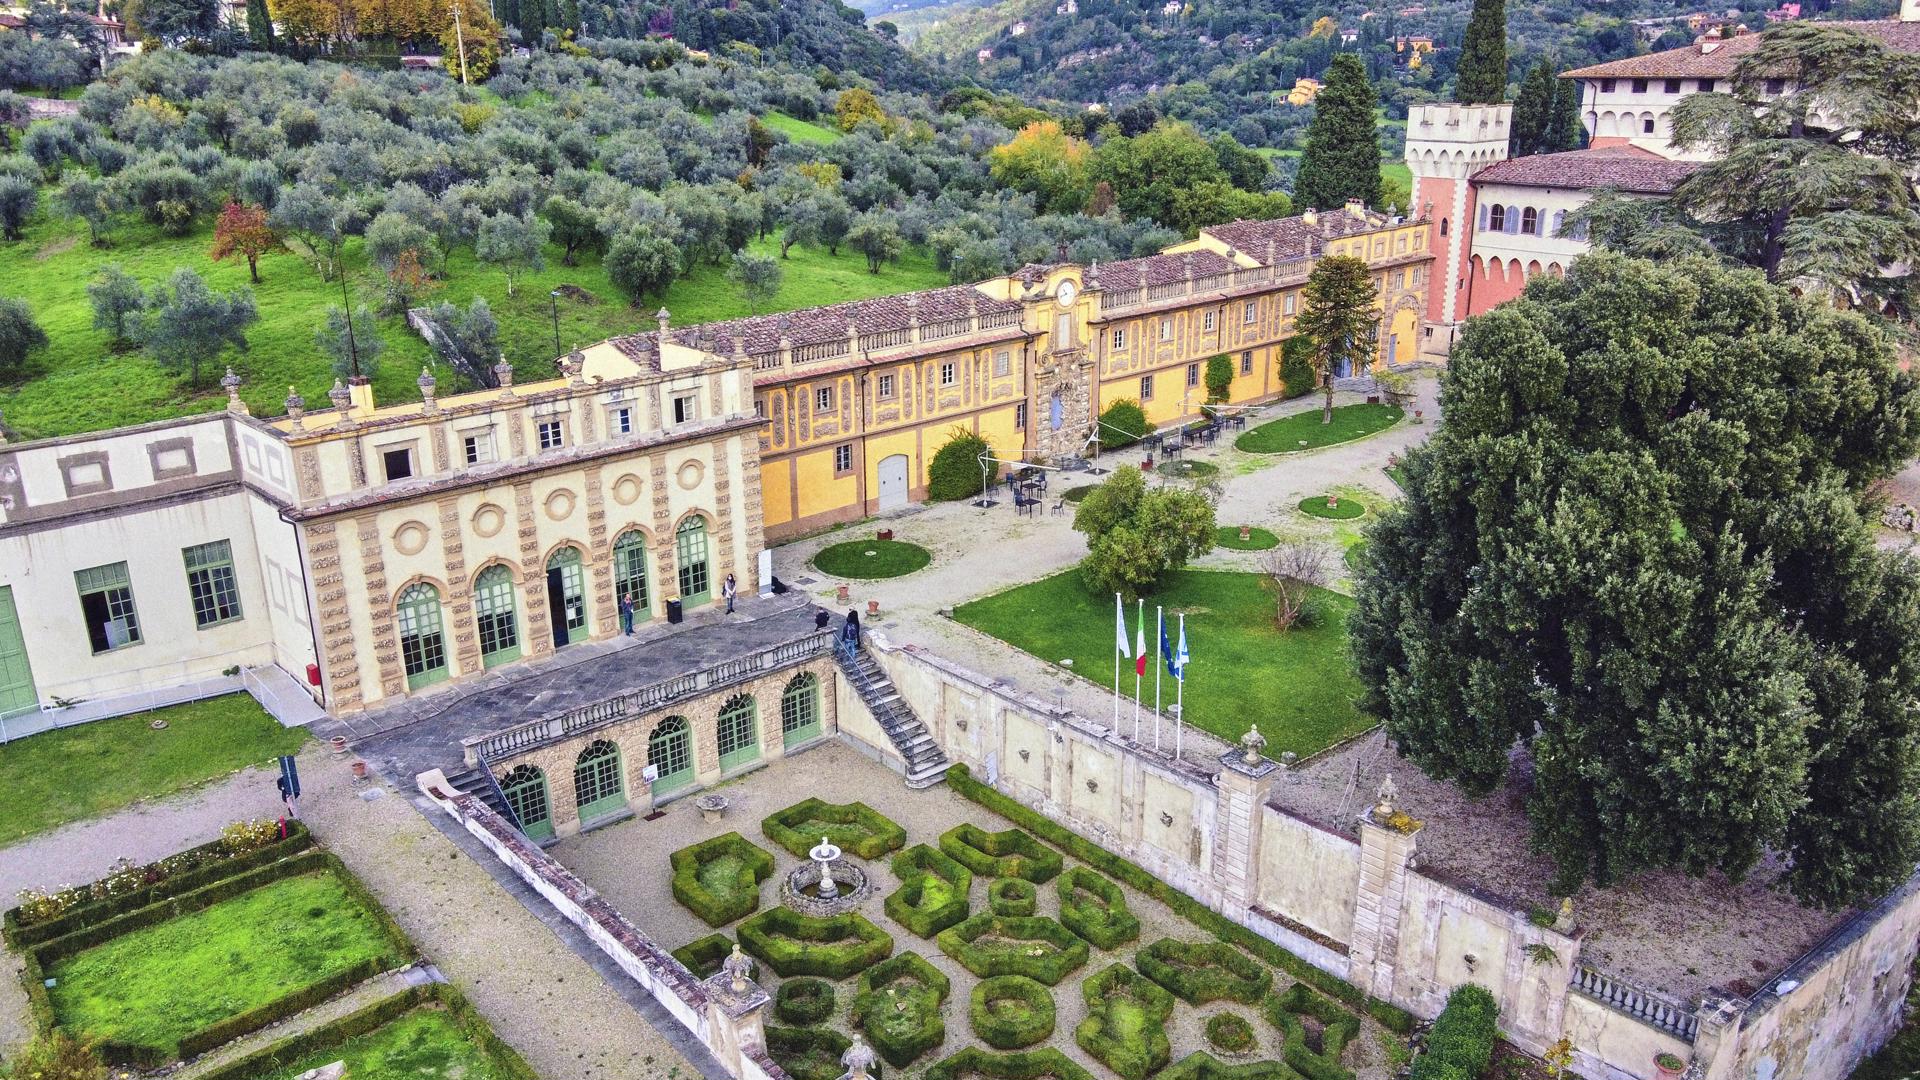 Villa salviati full drone view